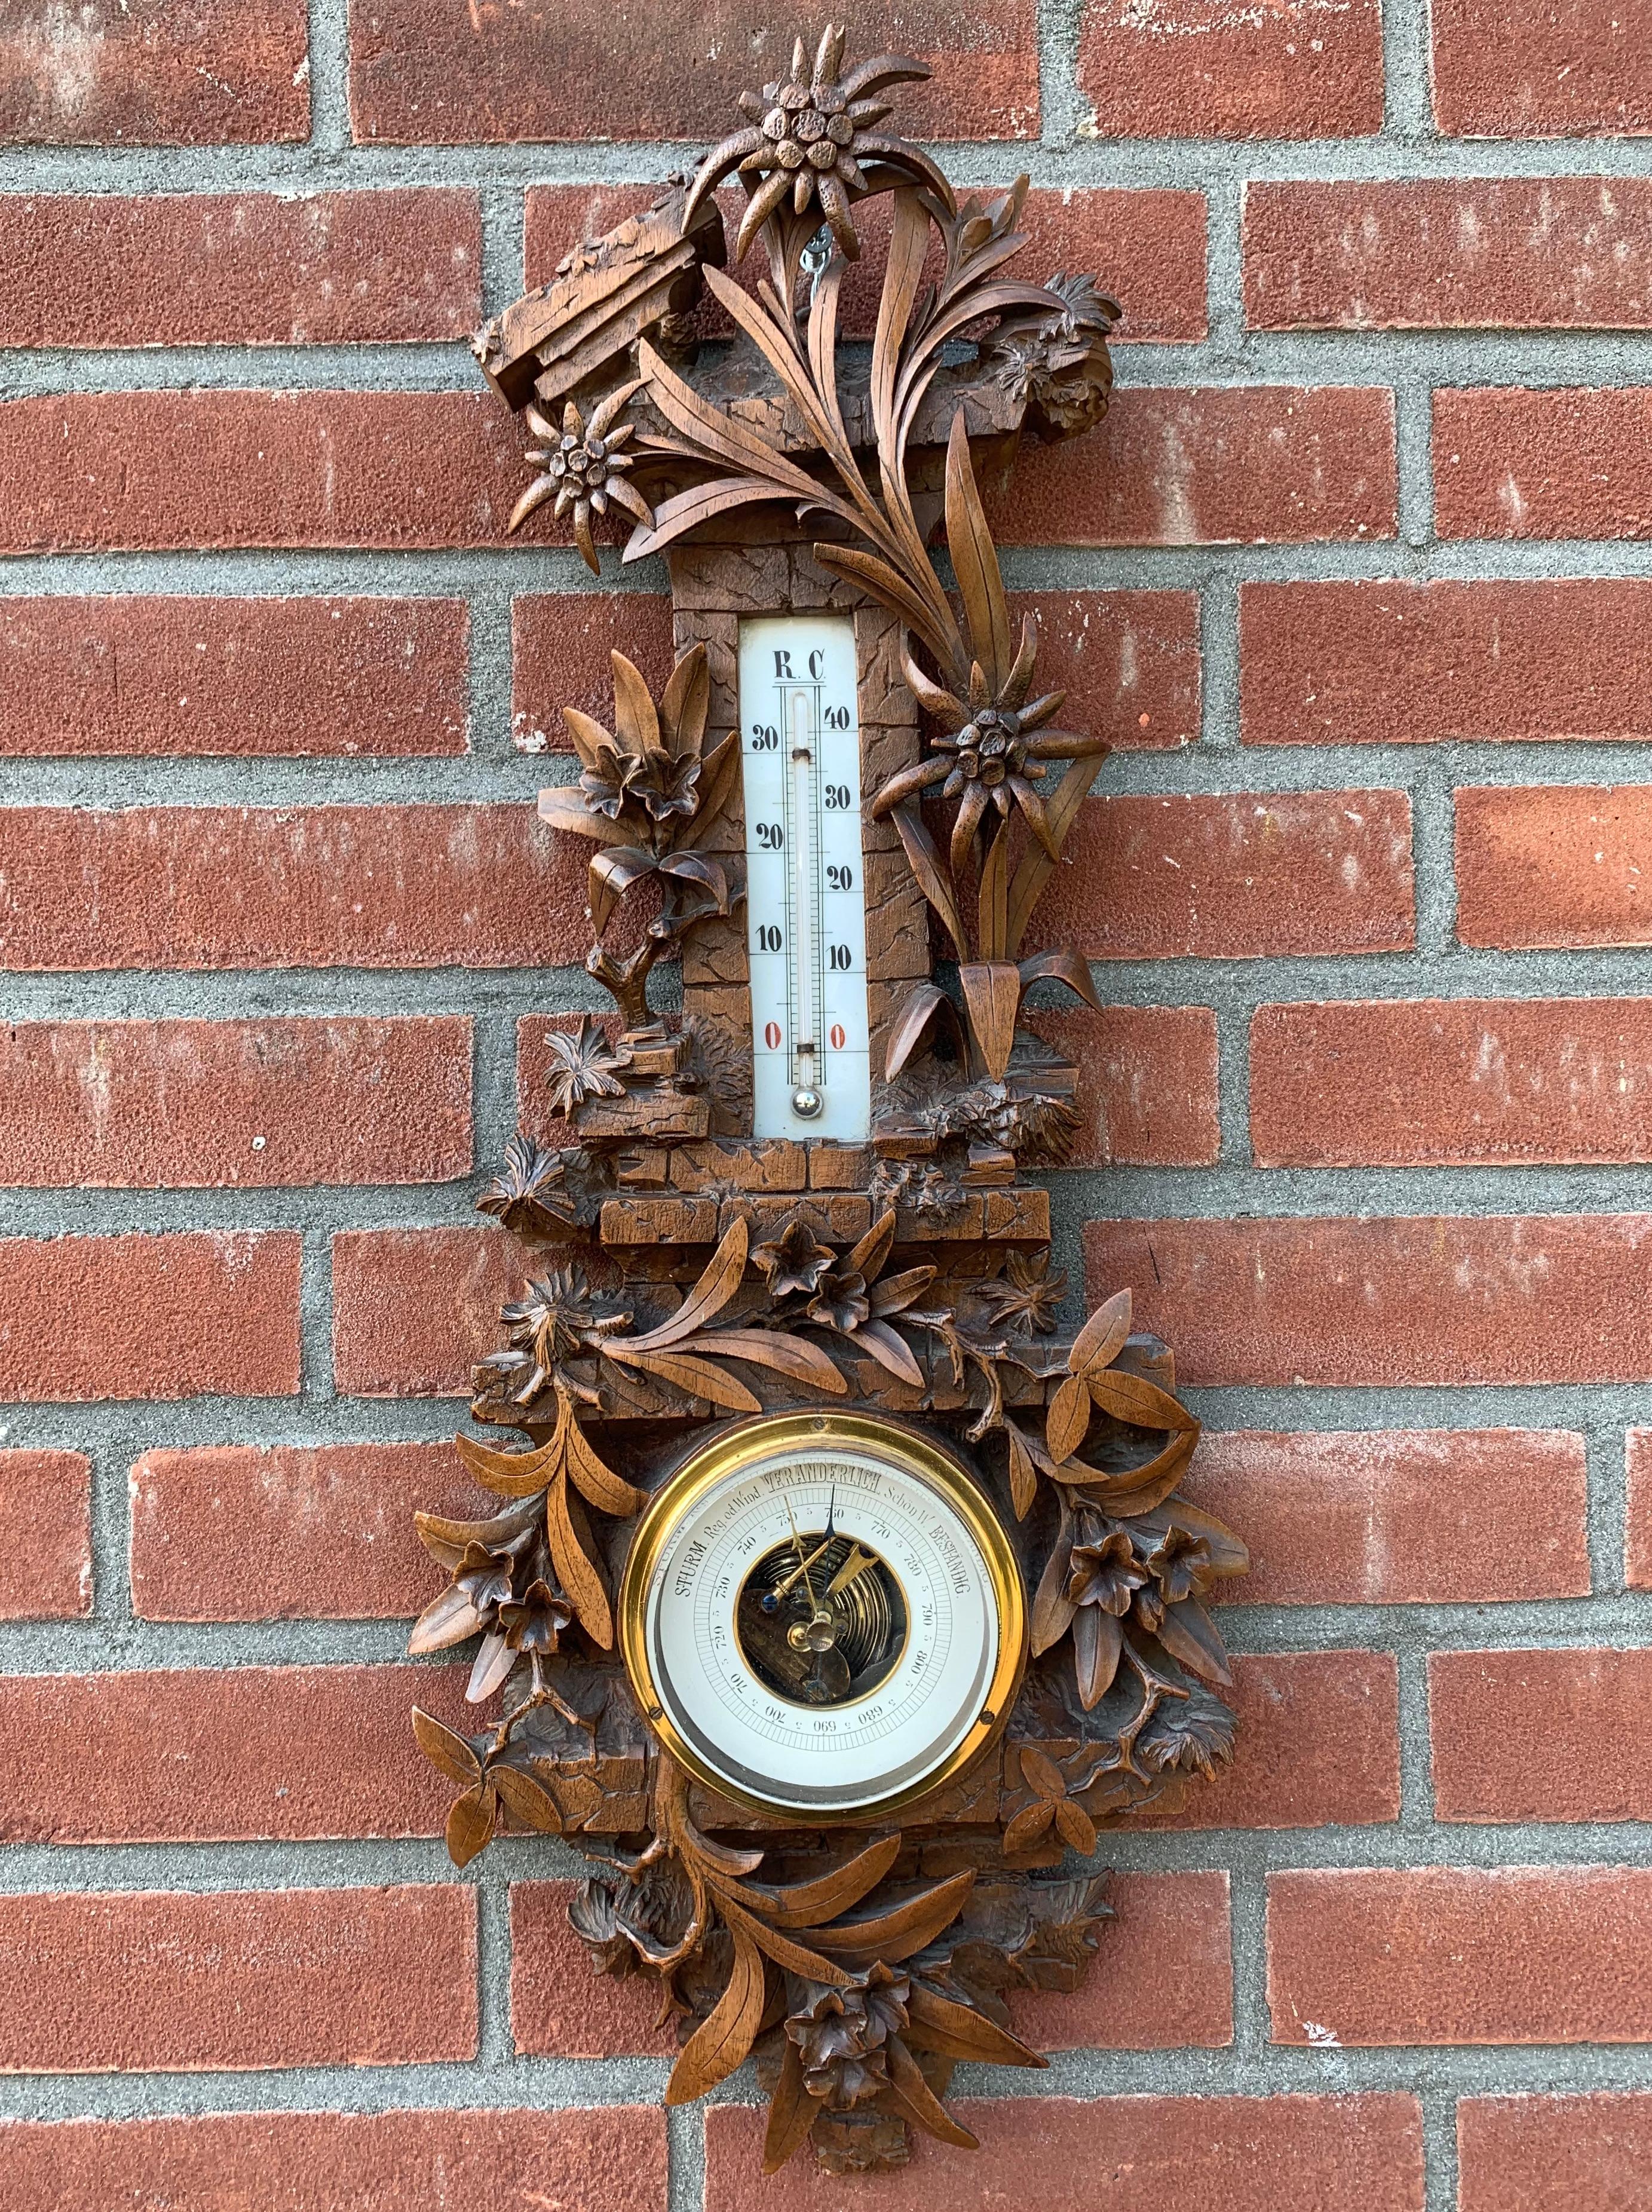 Baromètre / station météorologique suisse sculpté de qualité muséale supérieure

Ce baromètre antique ne concerne pas seulement l'actualité du temps, c'est aussi une véritable œuvre d'art et un vrai plaisir à regarder. L'attention portée aux détails